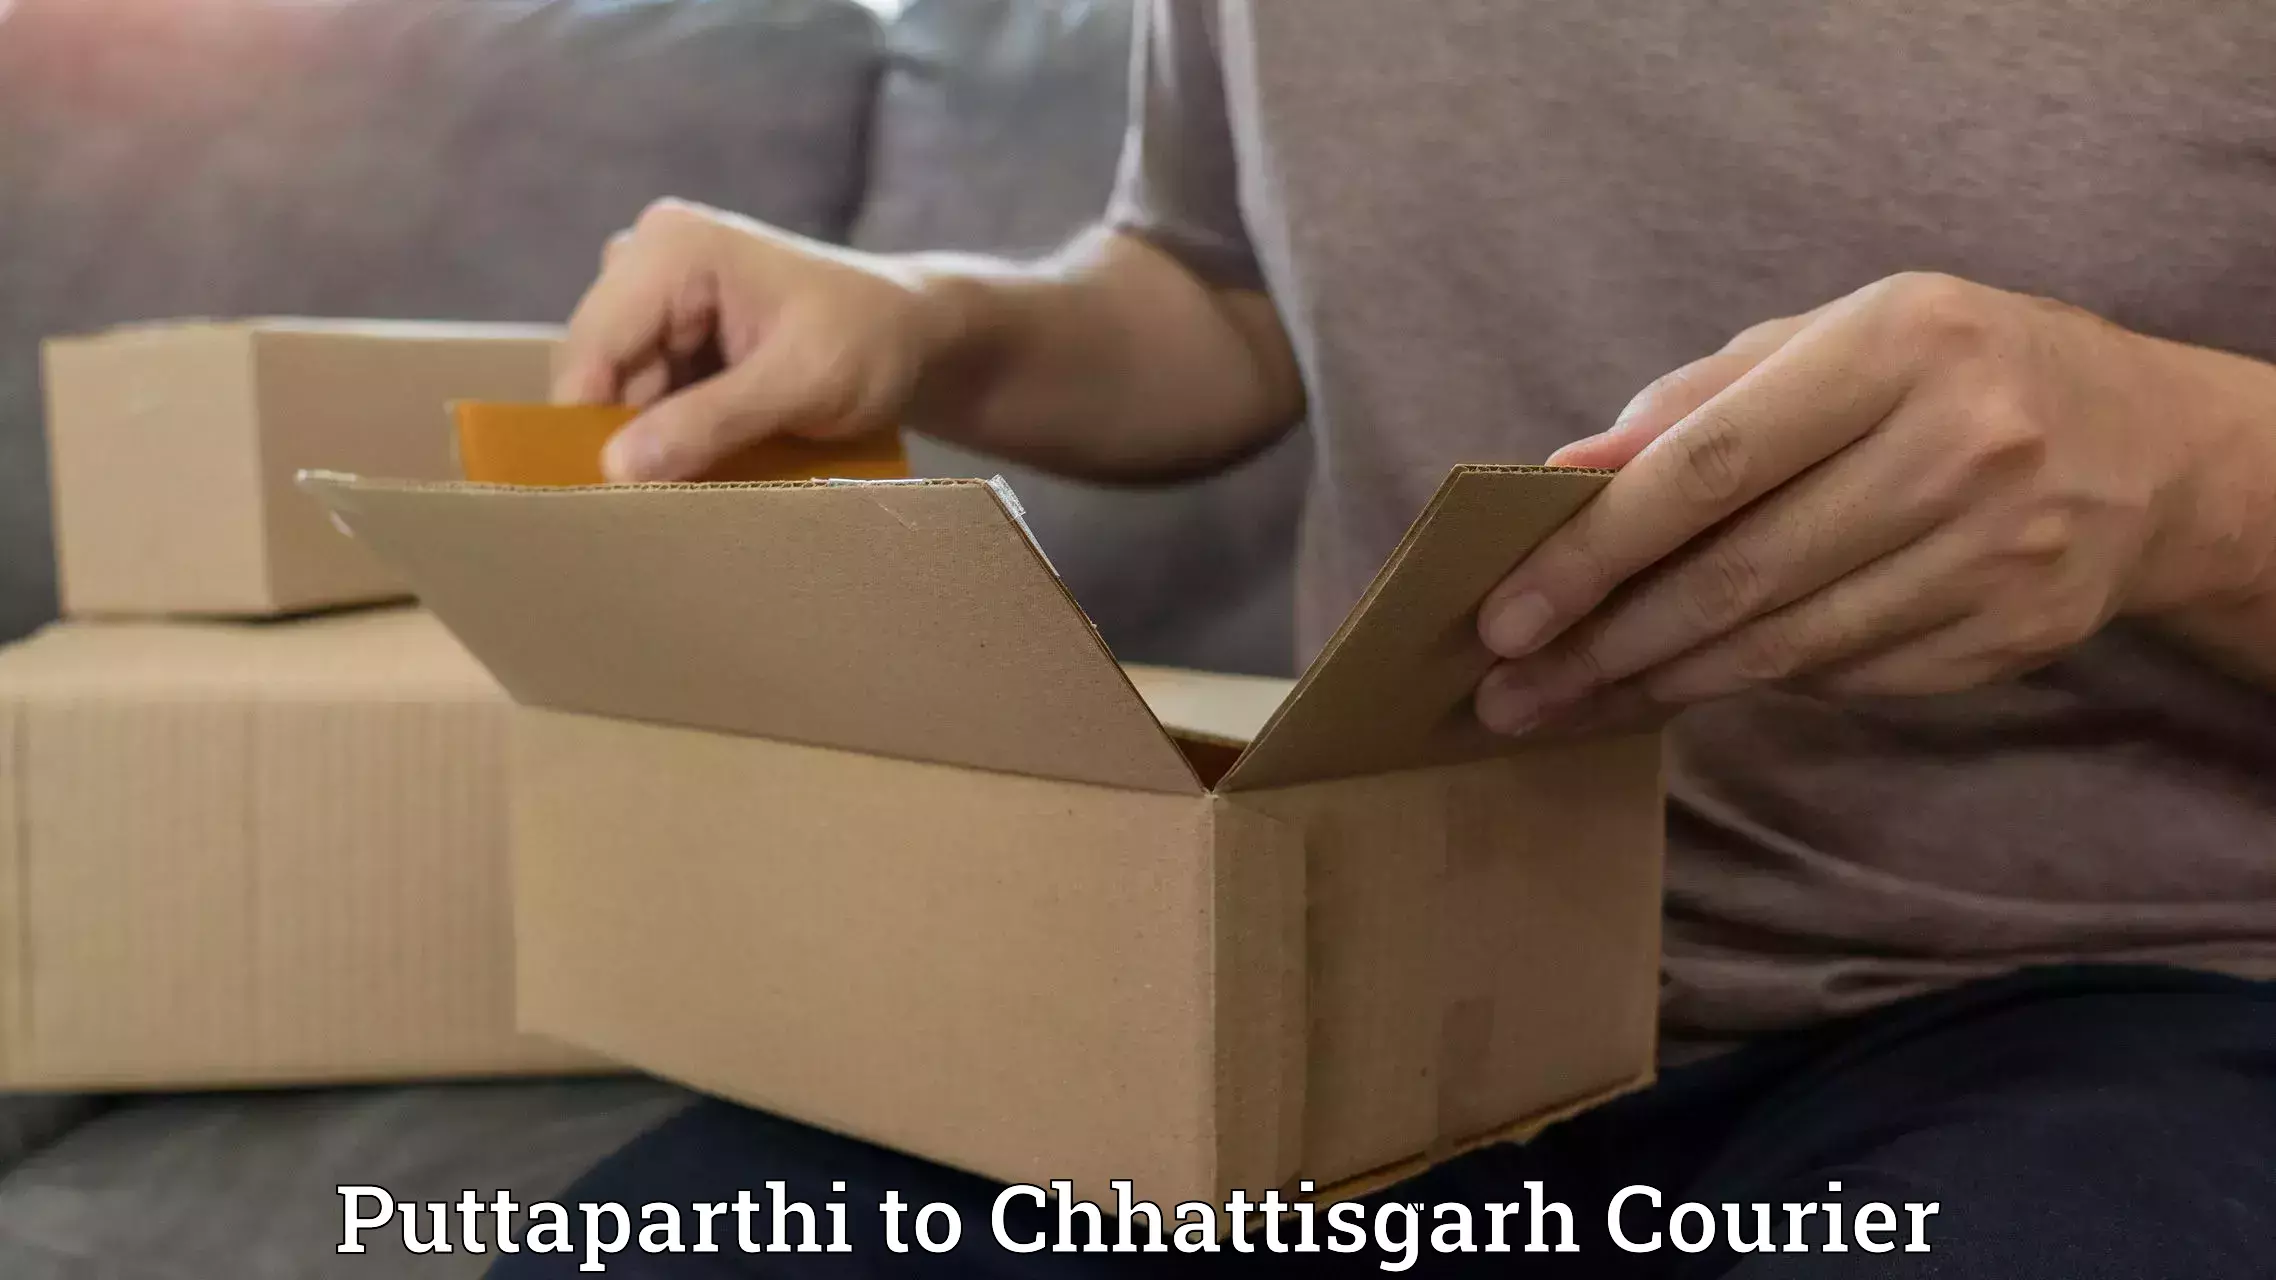 Professional courier handling Puttaparthi to Premnagar